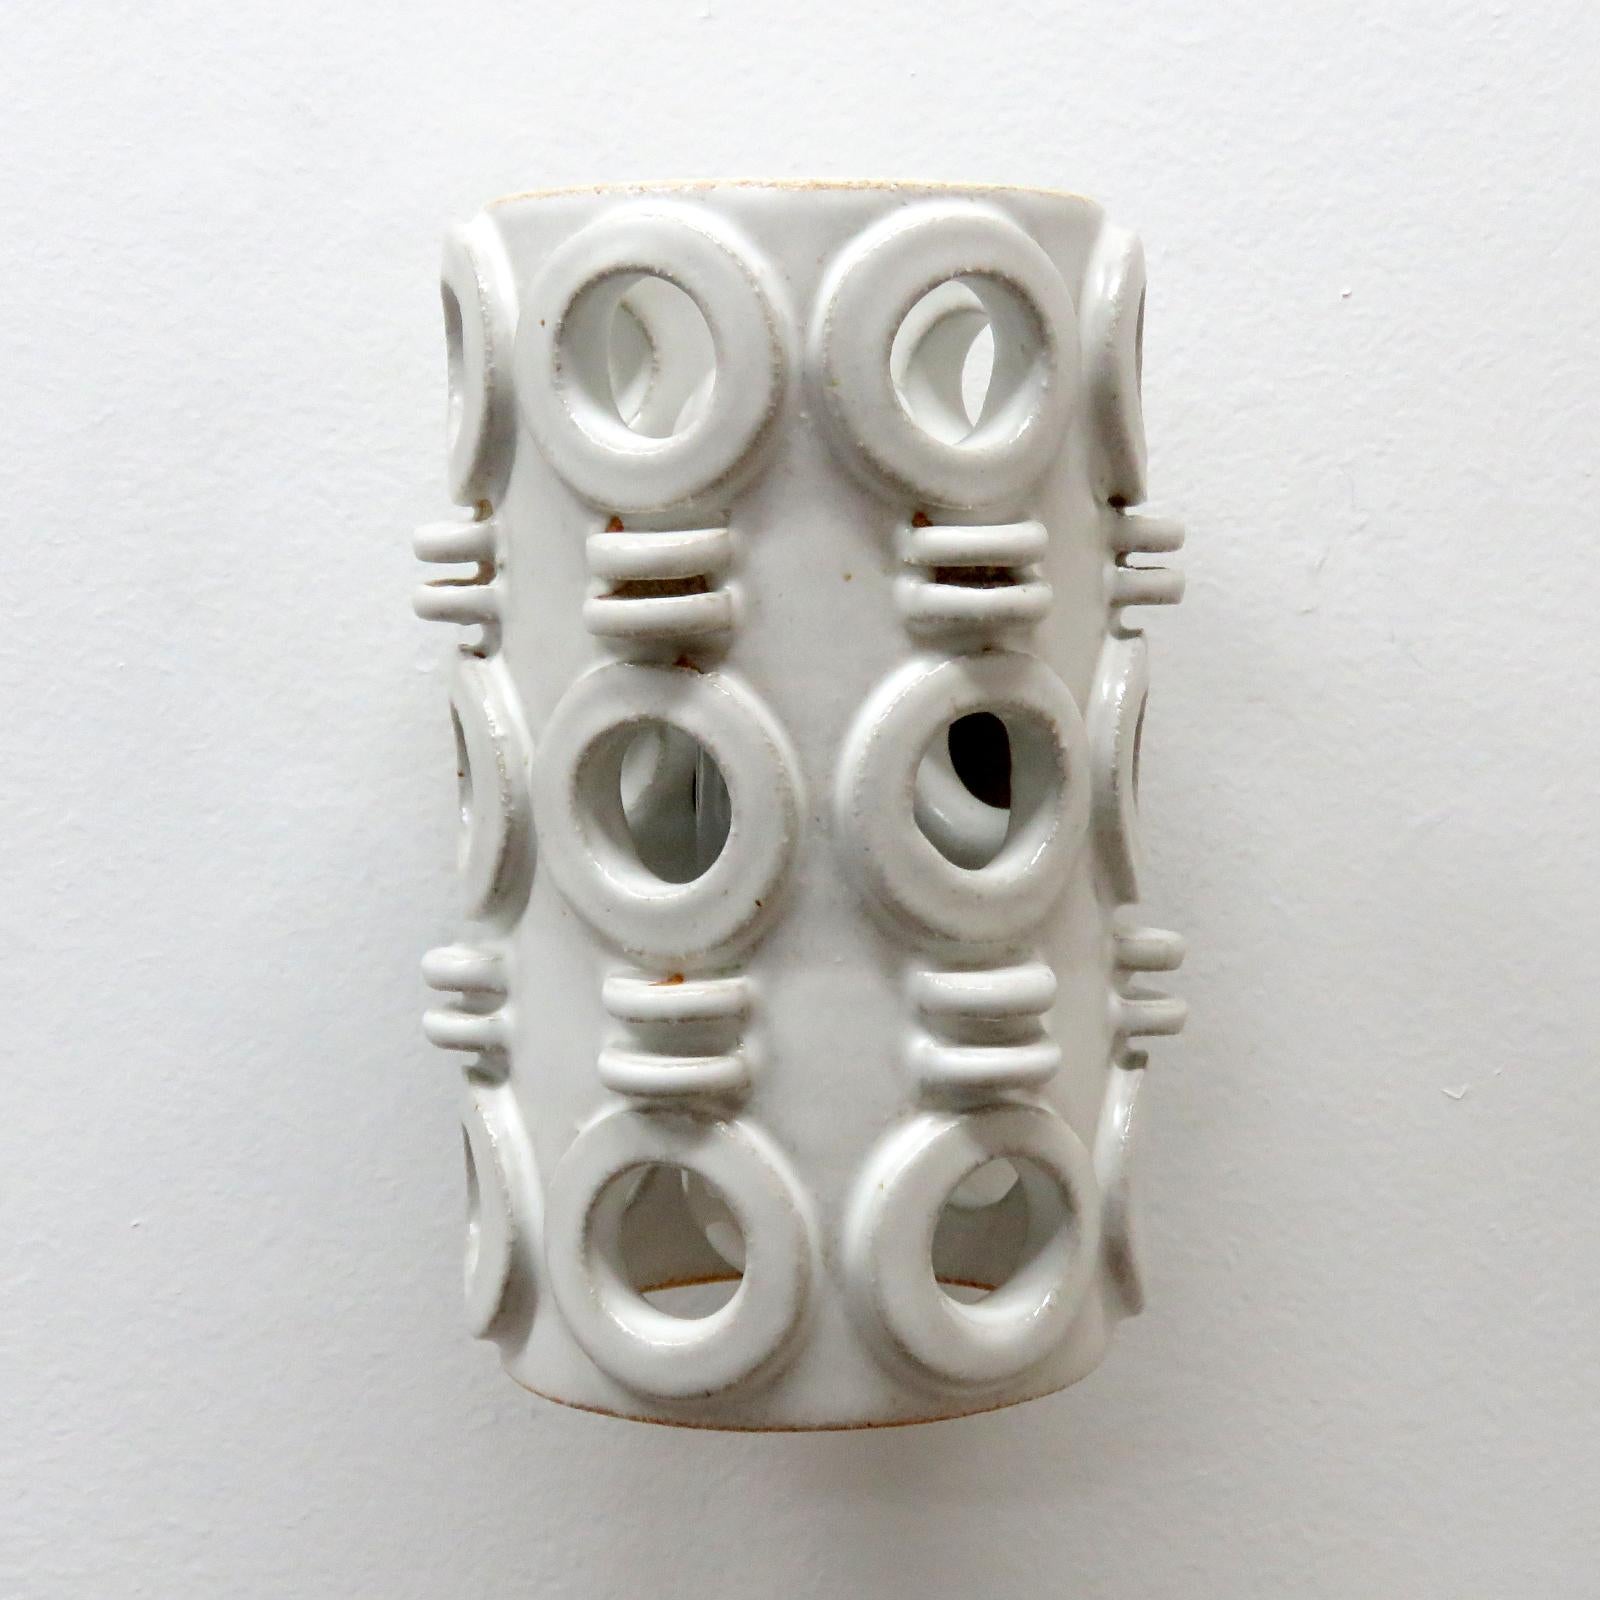 Die wundervoll skulpturale Keramik-Wandleuchte No.49 wurde von der in Los Angeles lebenden Keramikerin Heather Levine entworfen und handgefertigt. Hochgebranntes Steinzeug mit grau/weiß glasiertem Scherben und dekorativen Perforationen, die das